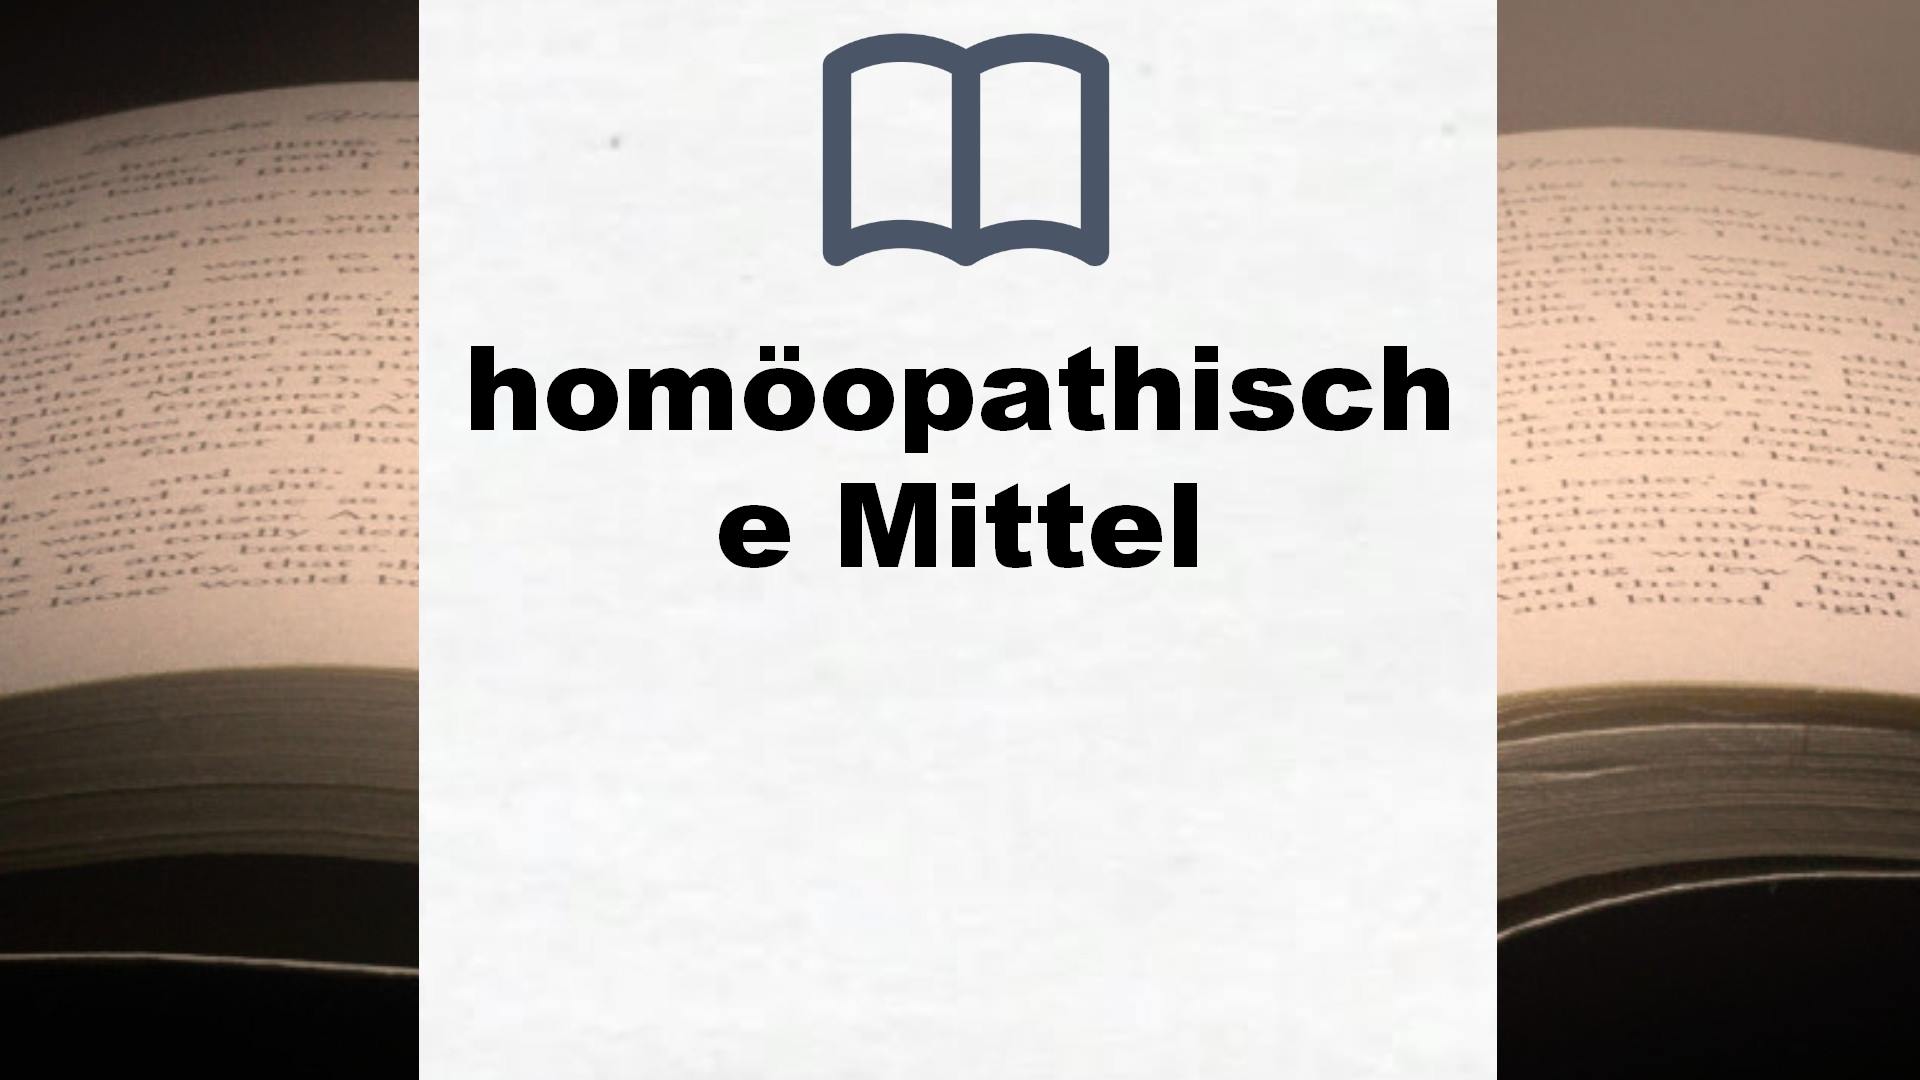 Bücher über homöopathische Mittel